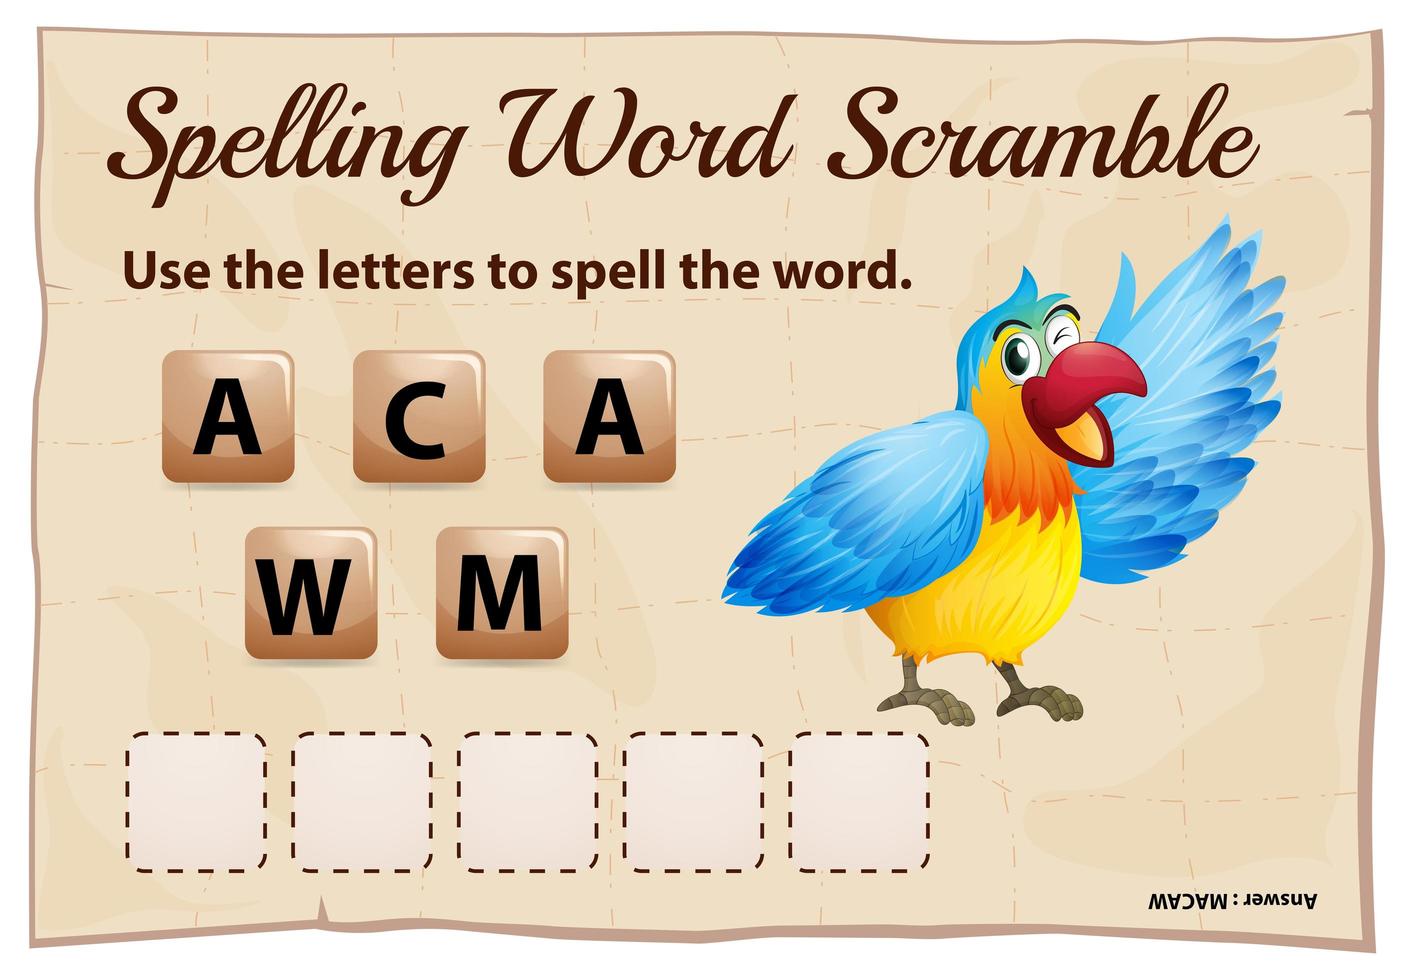 juego de ortografía word scramble con guacamayo vector